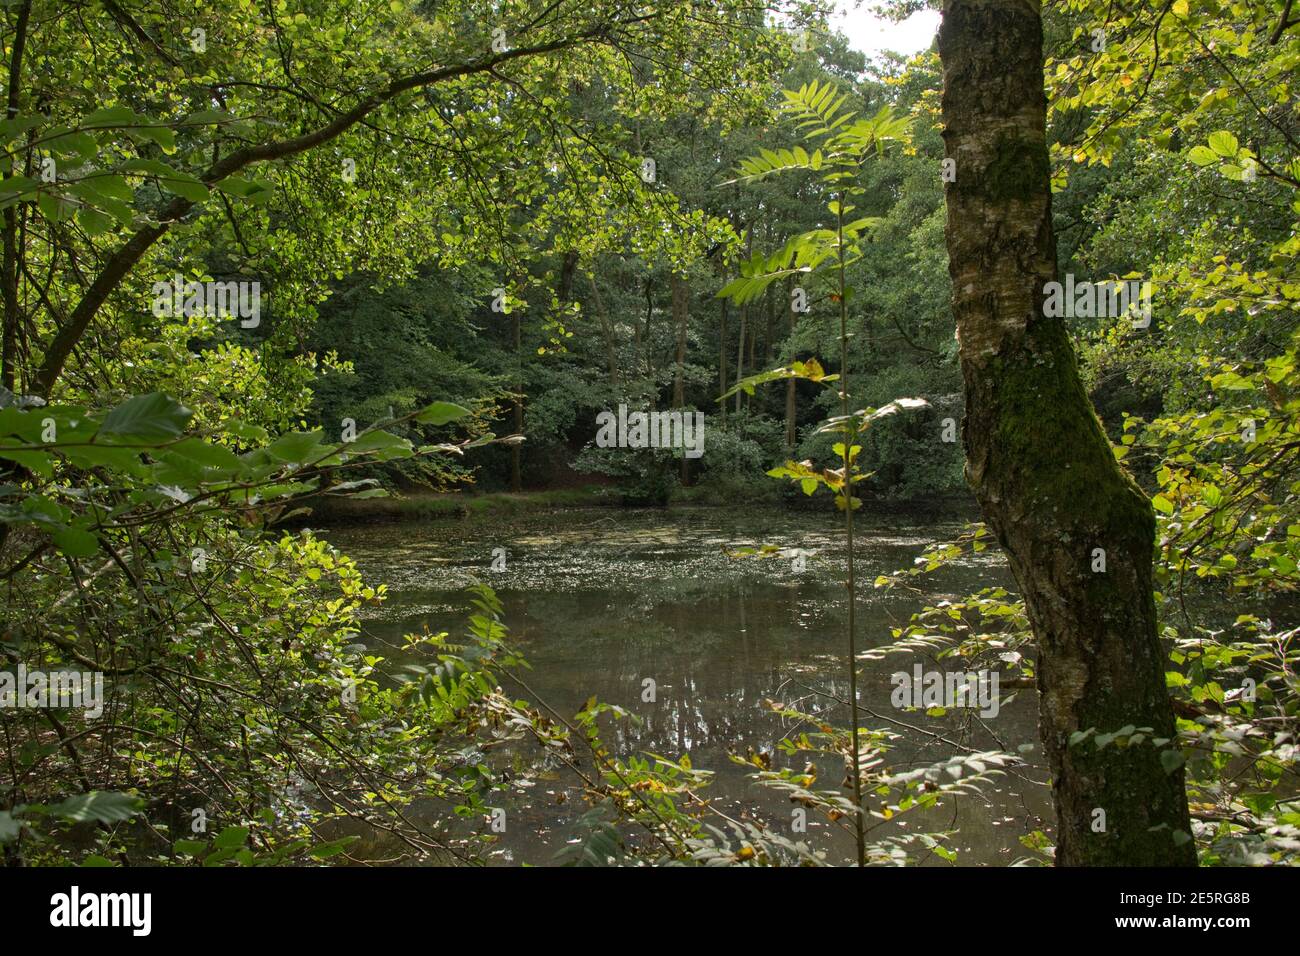 Estanque con aguas poco profundas y plantas oxigenantes encerradas en frondosos bosques de hoja caduca a finales del verano, Berkshire, septiembre Foto de stock